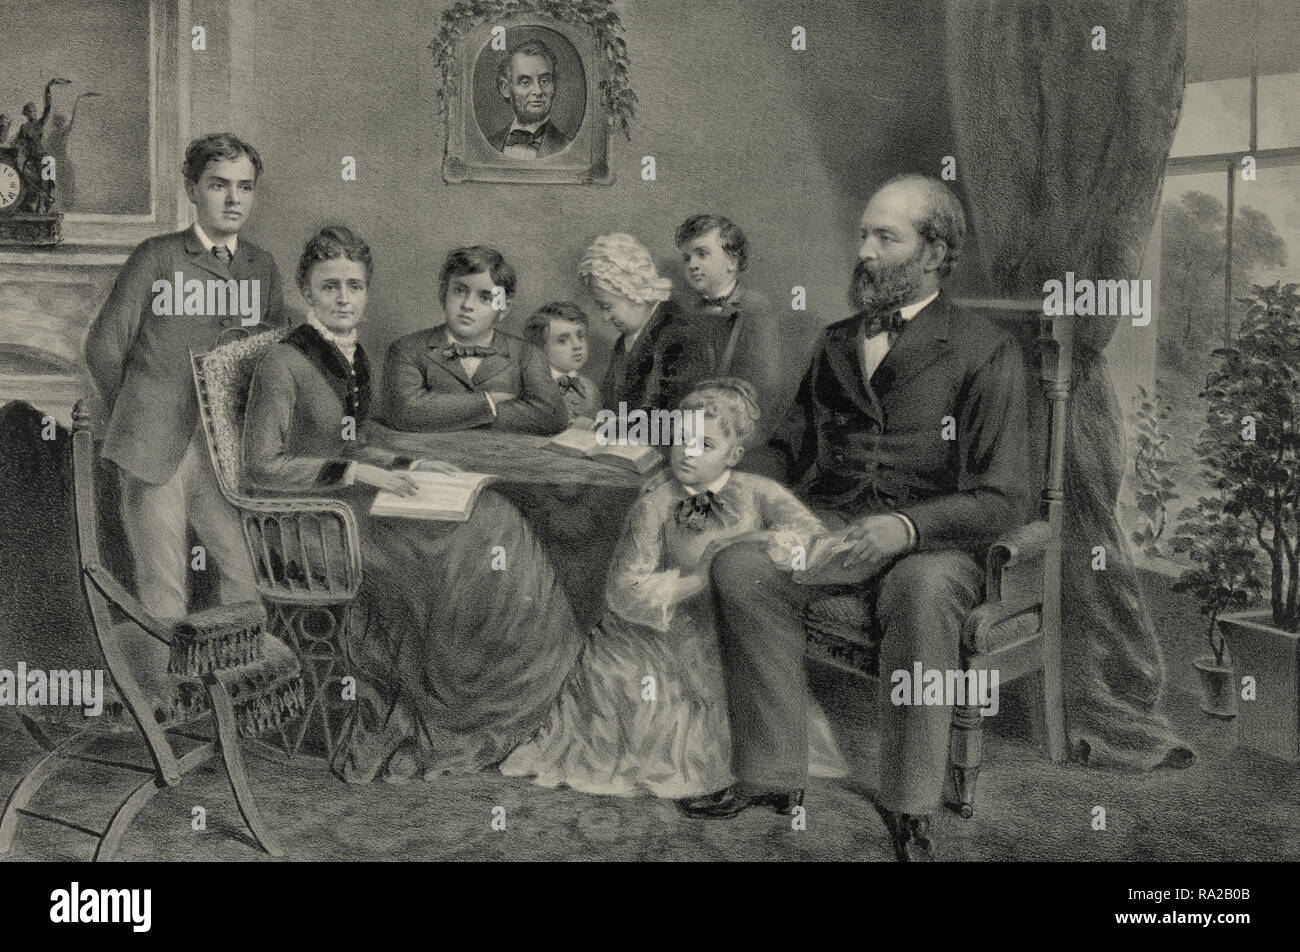 Garfield et sa famille - Imprimer montre James A. Garfield, portrait en pied, orienté vers la gauche, assis, avec sa famille réunis autour d'une table, avec un portrait d'Abraham Lincoln accroché au mur à l'arrière-plan. 1881 Banque D'Images